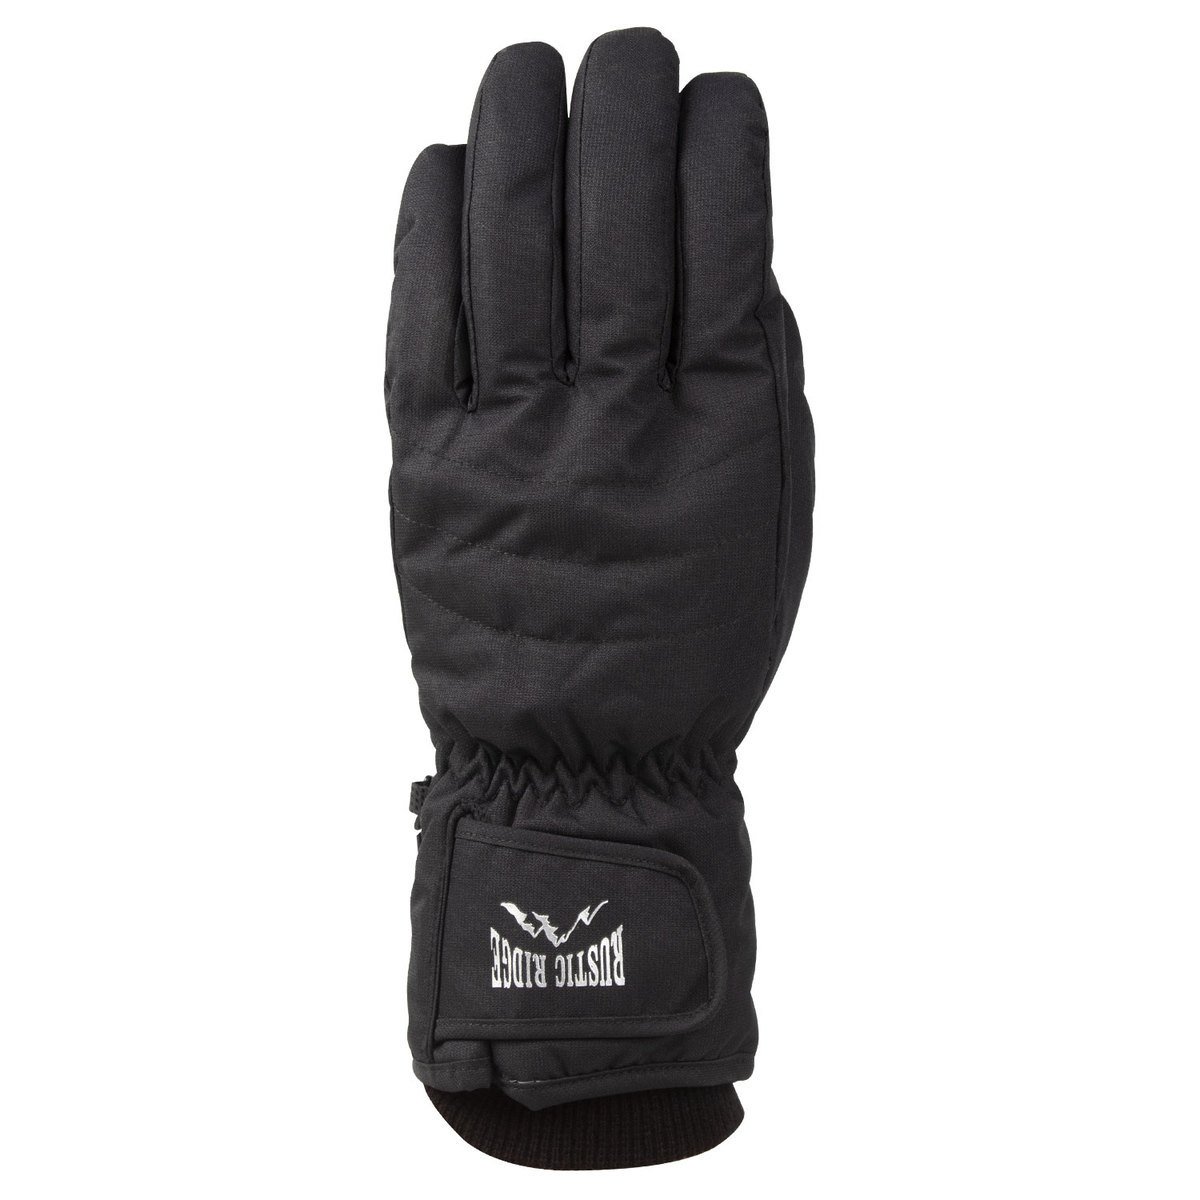 Rustic Ridge Men's Waterproof Winter Gloves - Black L by Sportsman's Warehouse